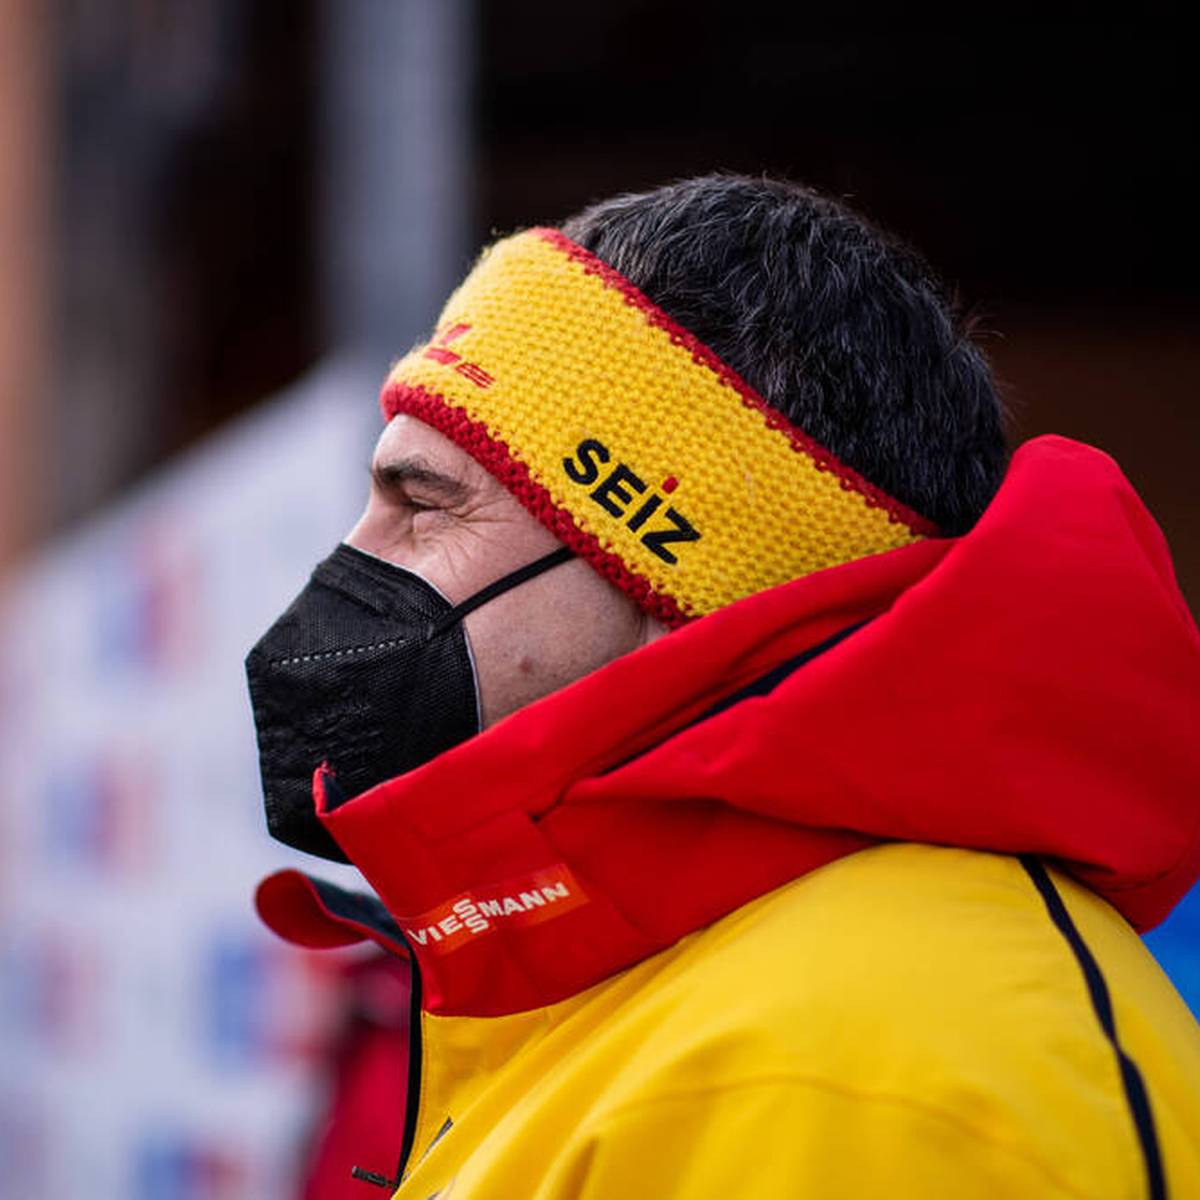 Georg Hackl kritisiert die Corona-Teststrategie bei den Olympischen Winterspielen in Peking scharf. Die Rodel-Ikone fordert zudem eine Verlegung der Spiele.